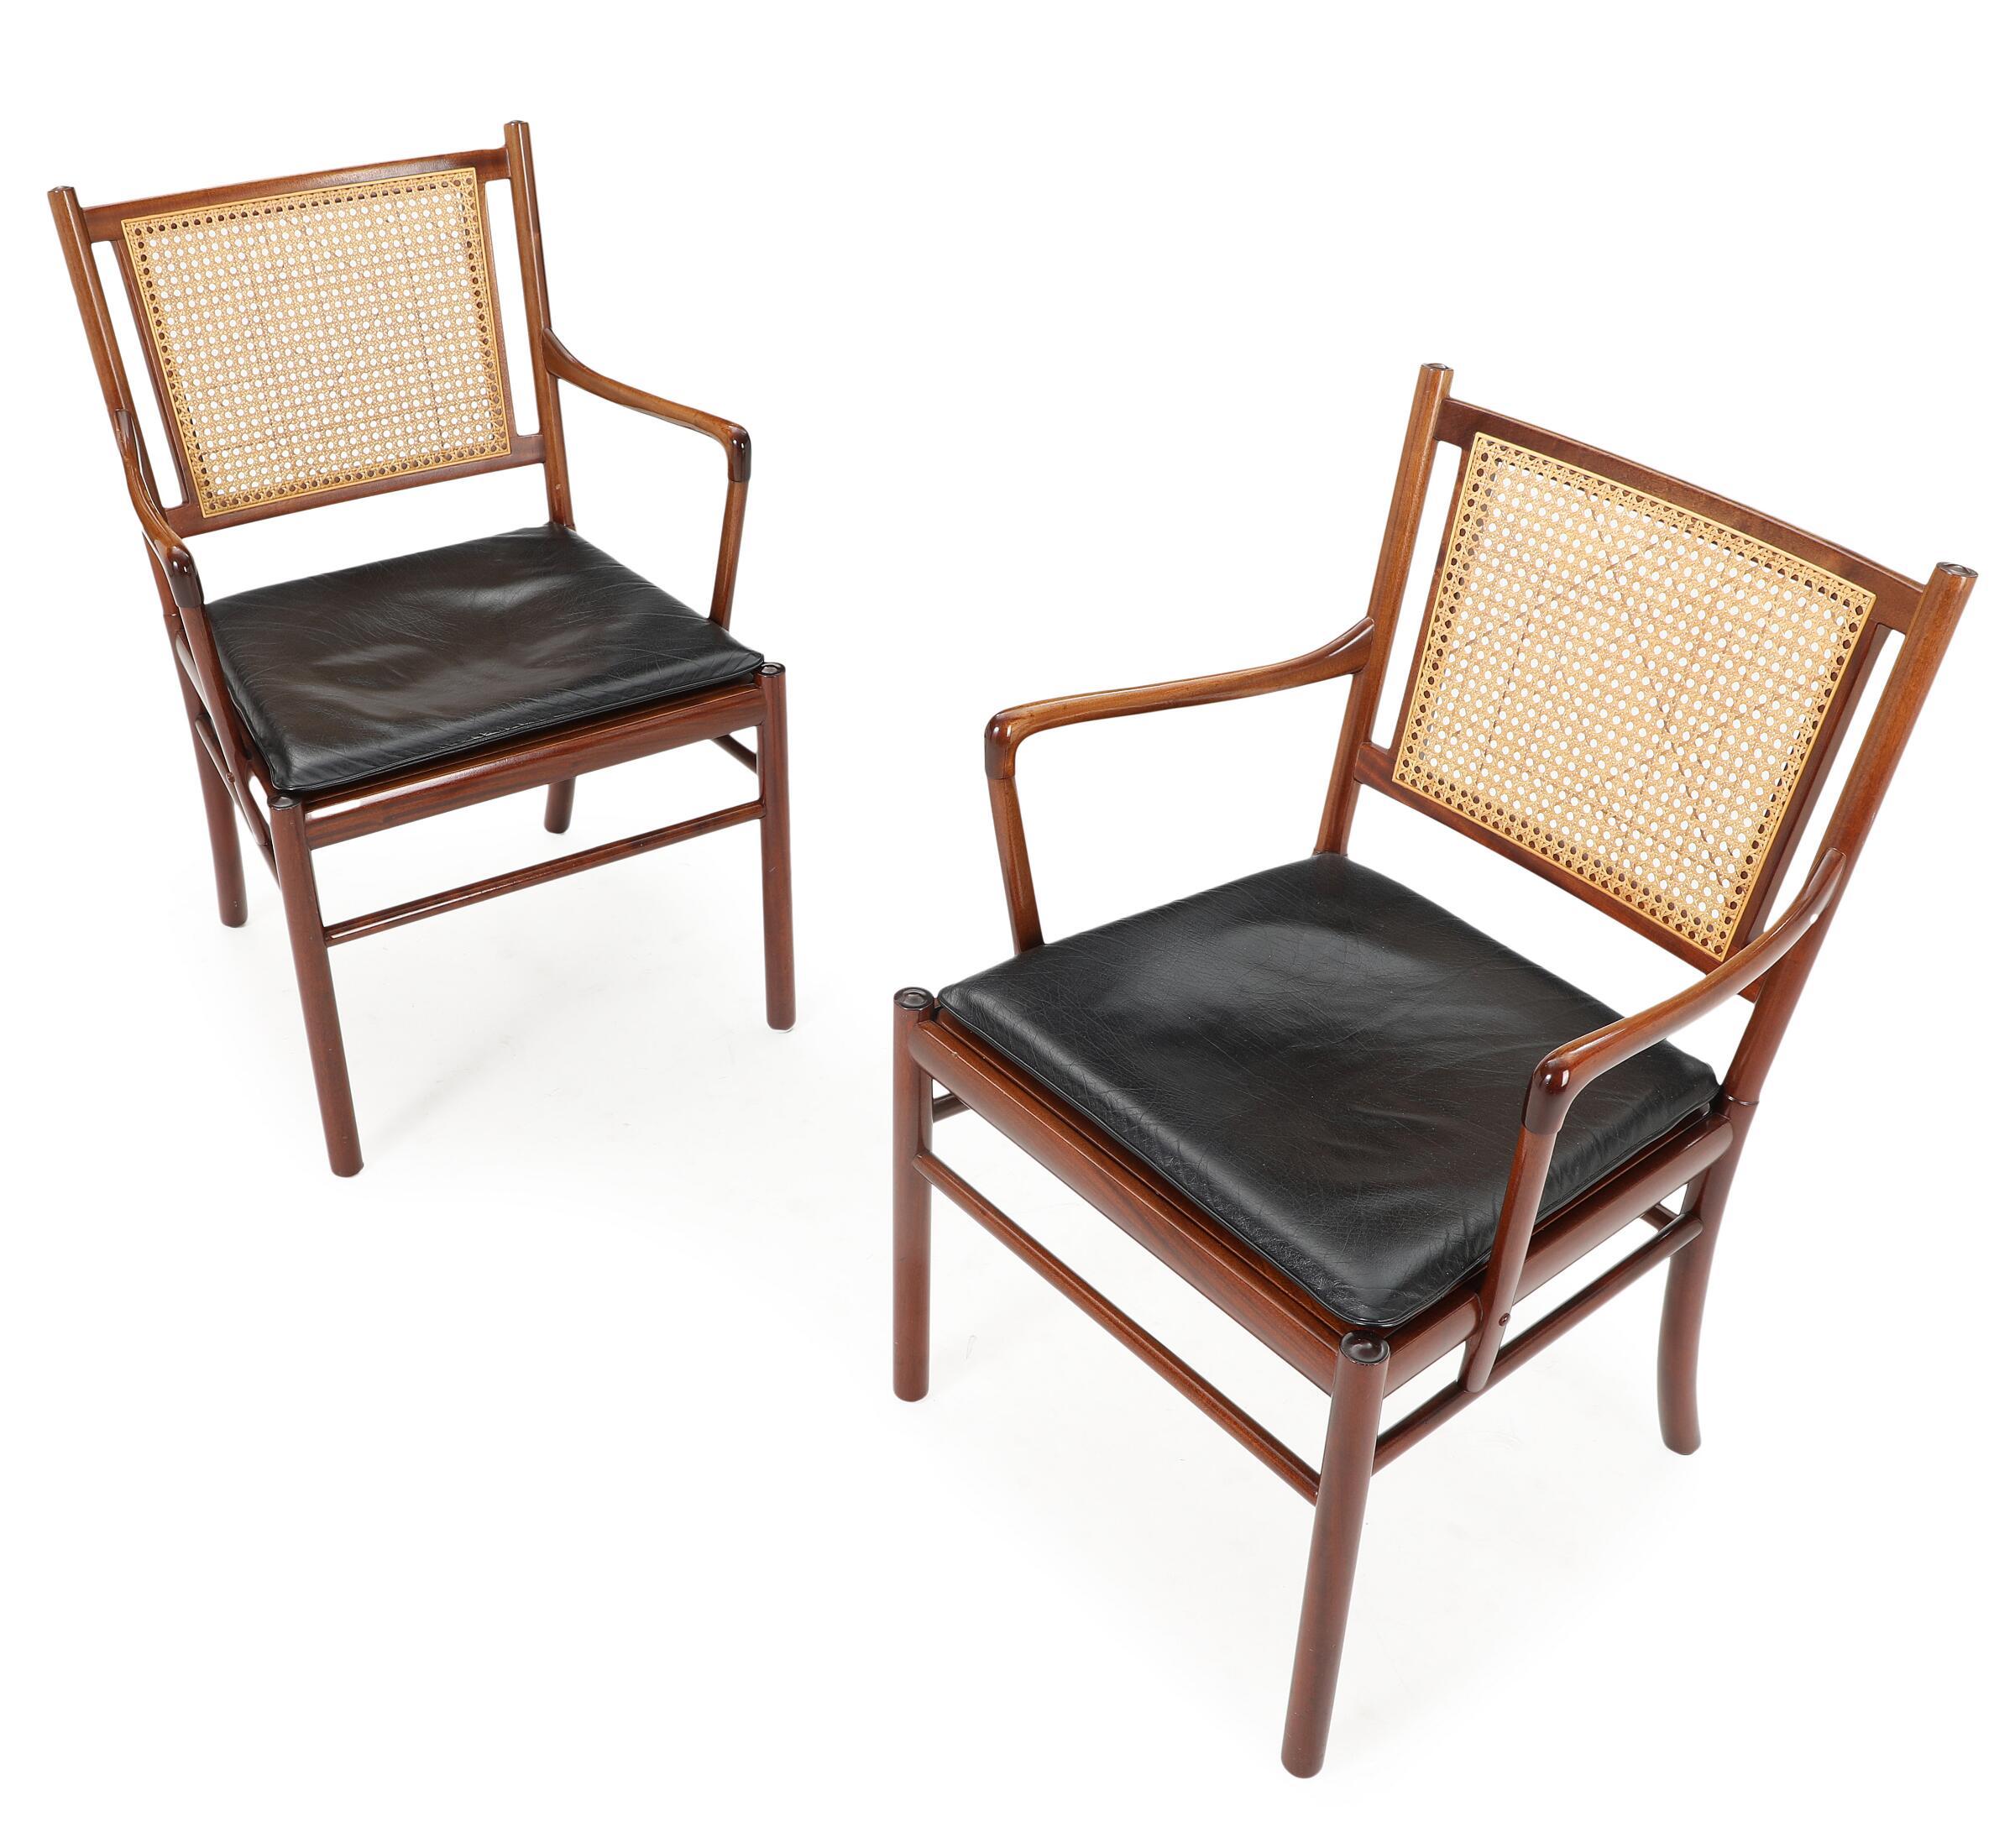 Paire de fauteuils 'Coloni', modèle PJ301 en acajou, cannage et cuir d'origine. Paire de fauteuils élégants avec un cadre fin en acajou du designer danois Ole Wanscher. Ces chaises témoignent du grand savoir-faire et du souci du détail qui font la